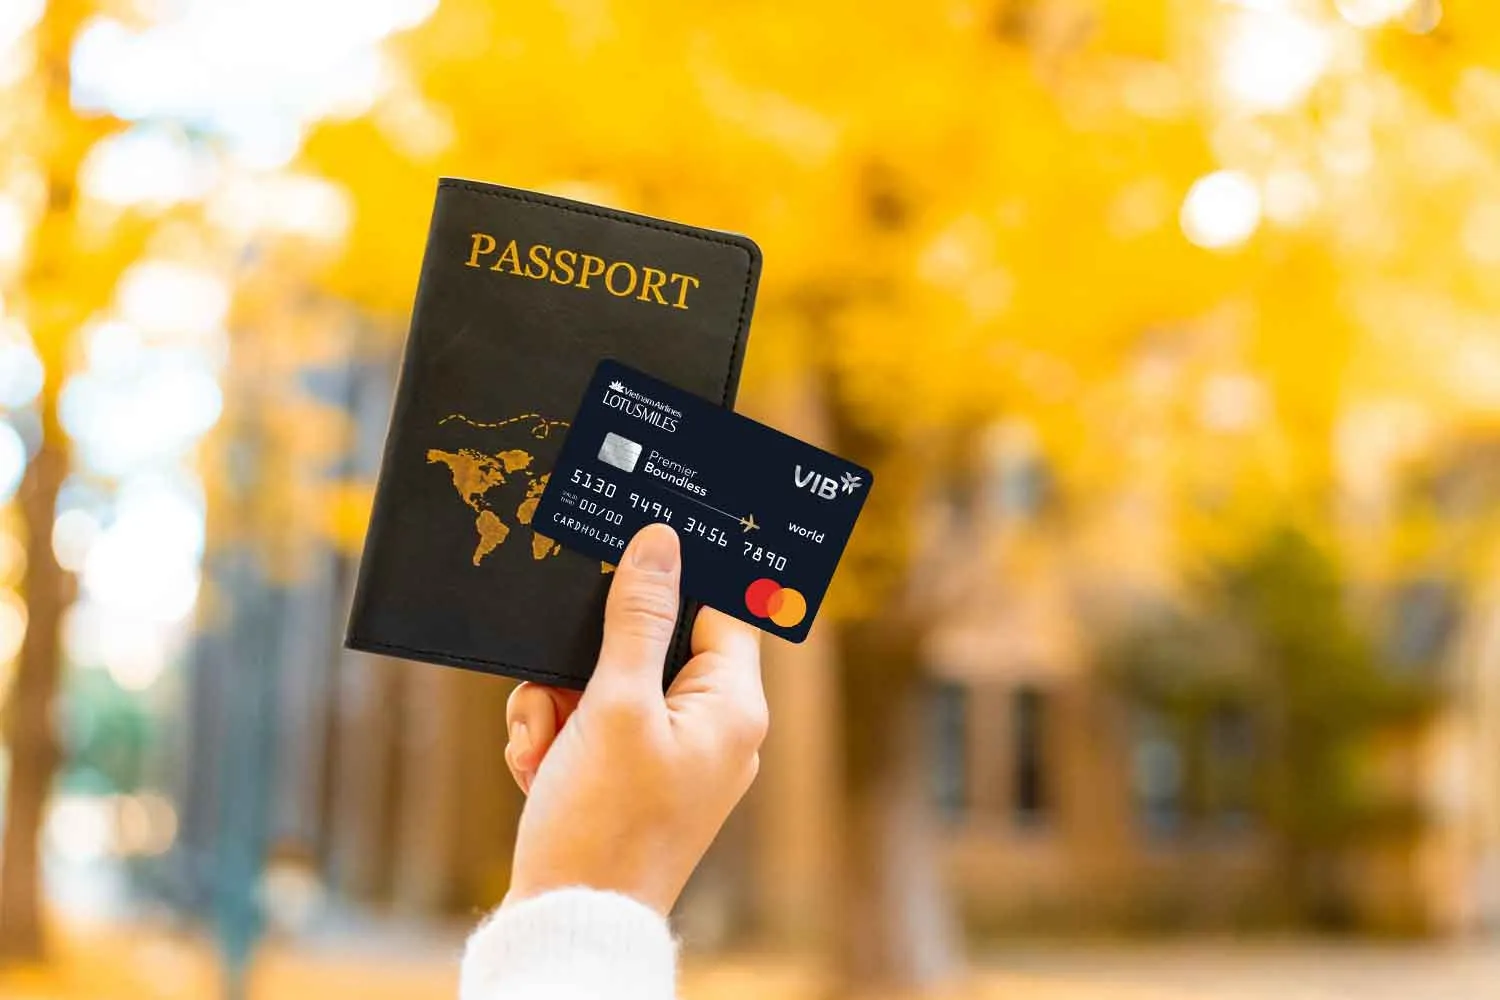 VIB Premier Boundless - dòng thẻ tín dụng du lịch mang đến nhiều ưu đãi